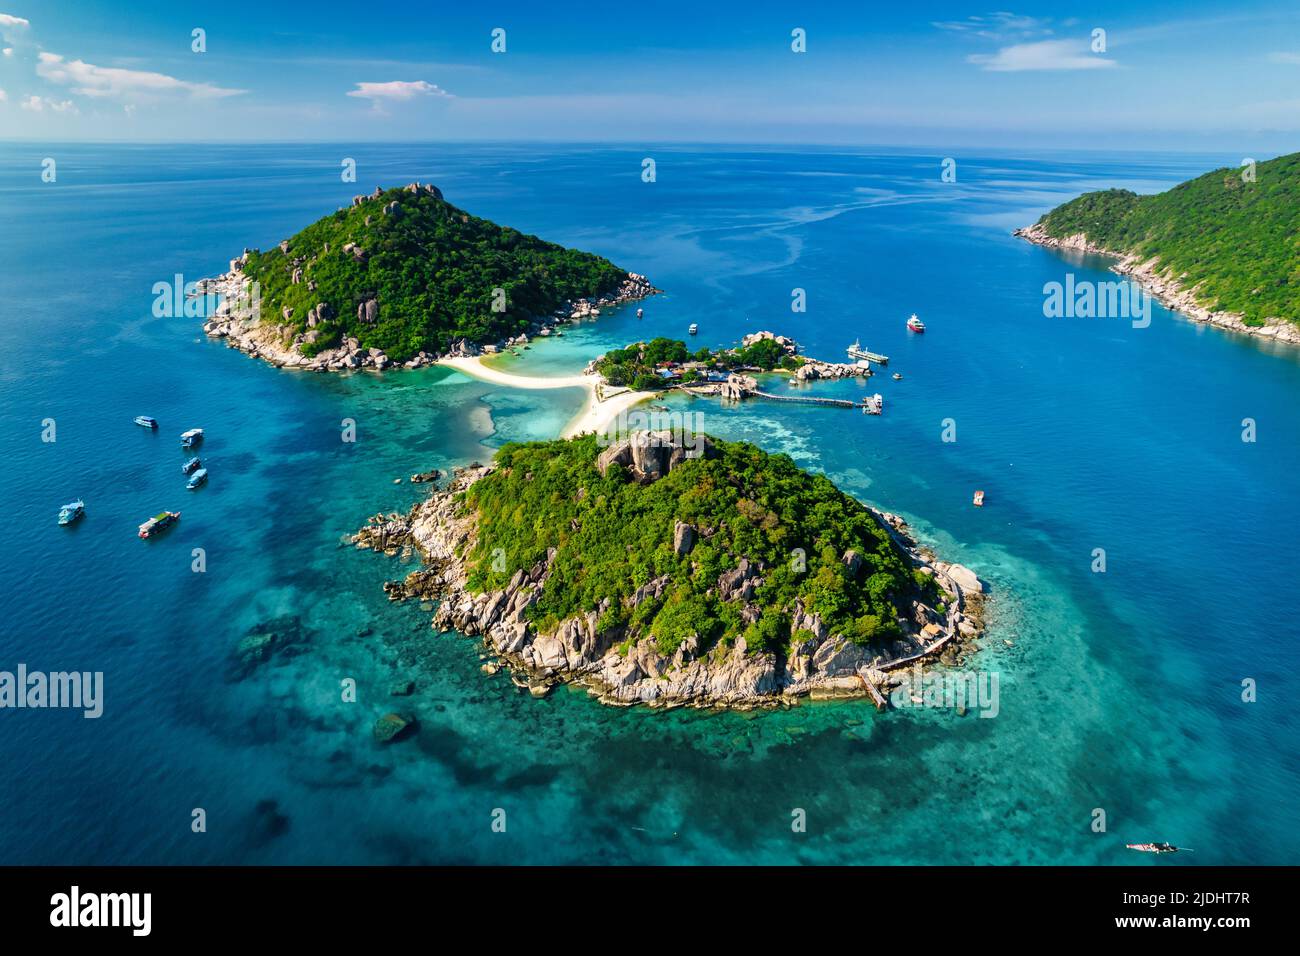 Foto aerea dell'idilliaca isola tropicale di Koh Nang Yuan e del suo famoso punto di vista, la Thailandia Foto Stock